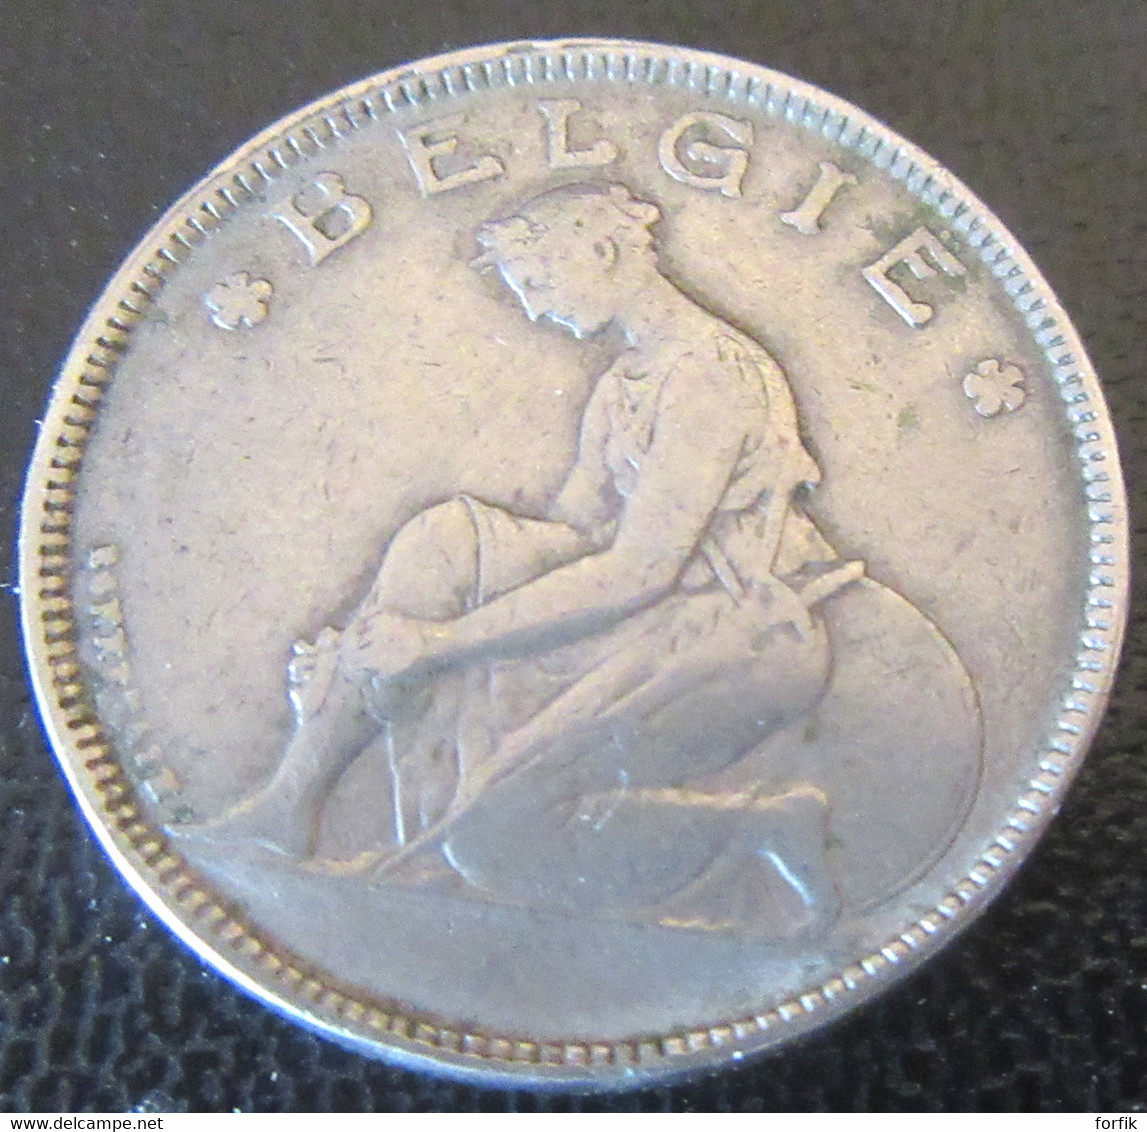 Belgique - Monnaie Bon Pour 2 Francs (Goed Voor 2 F) 1923 - Légende En Néerlandais - 2 Francs